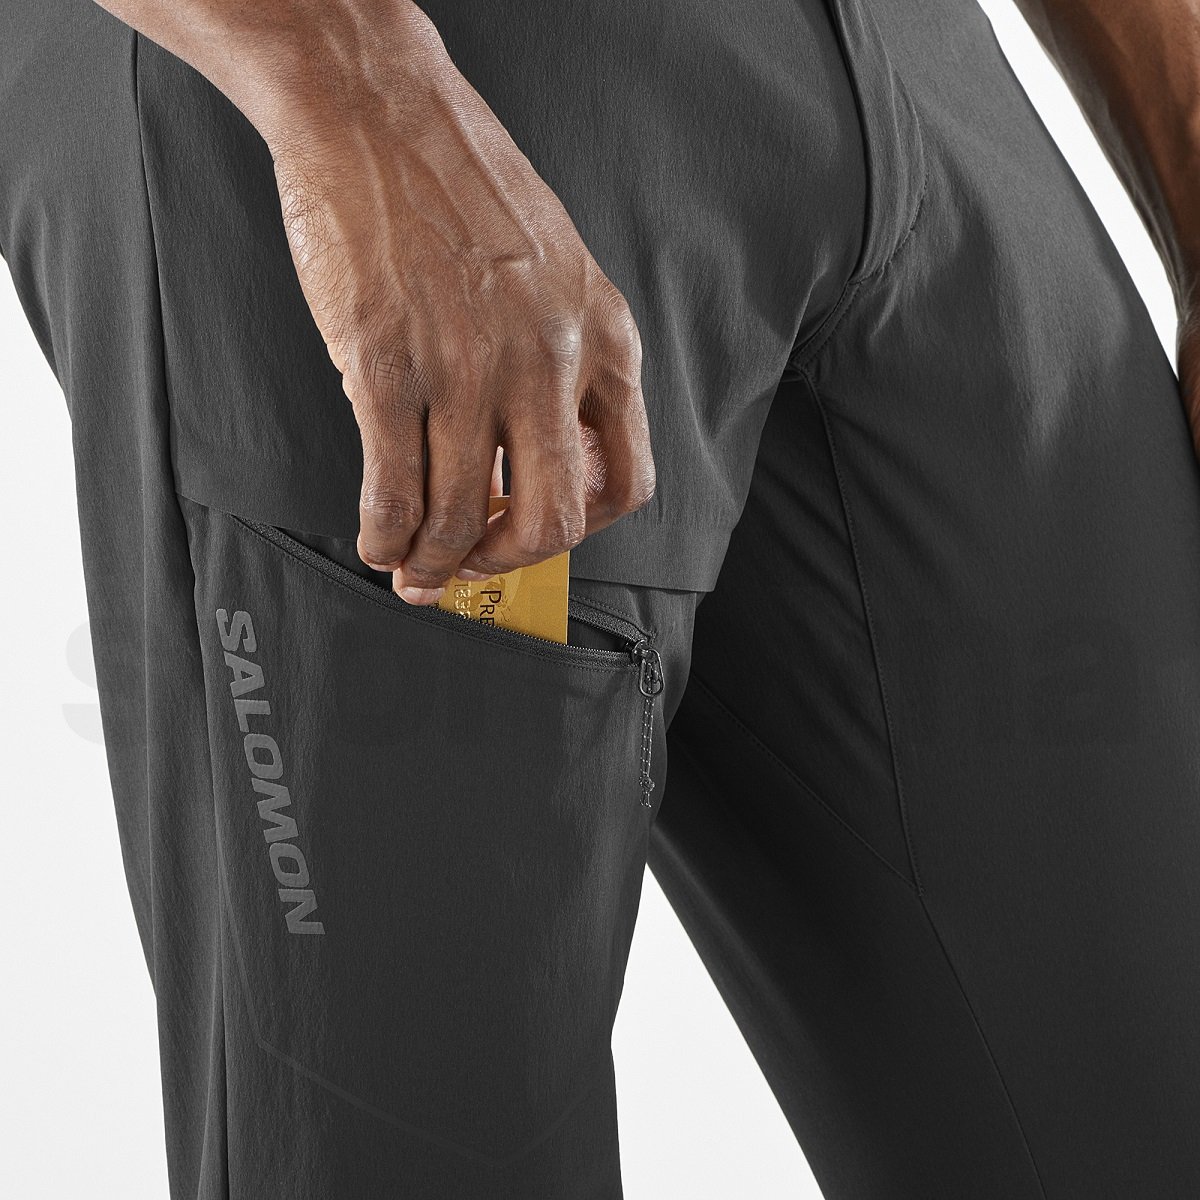 Kalhoty Salomon Wayfarer Pants M - černá (zkrácená délka)